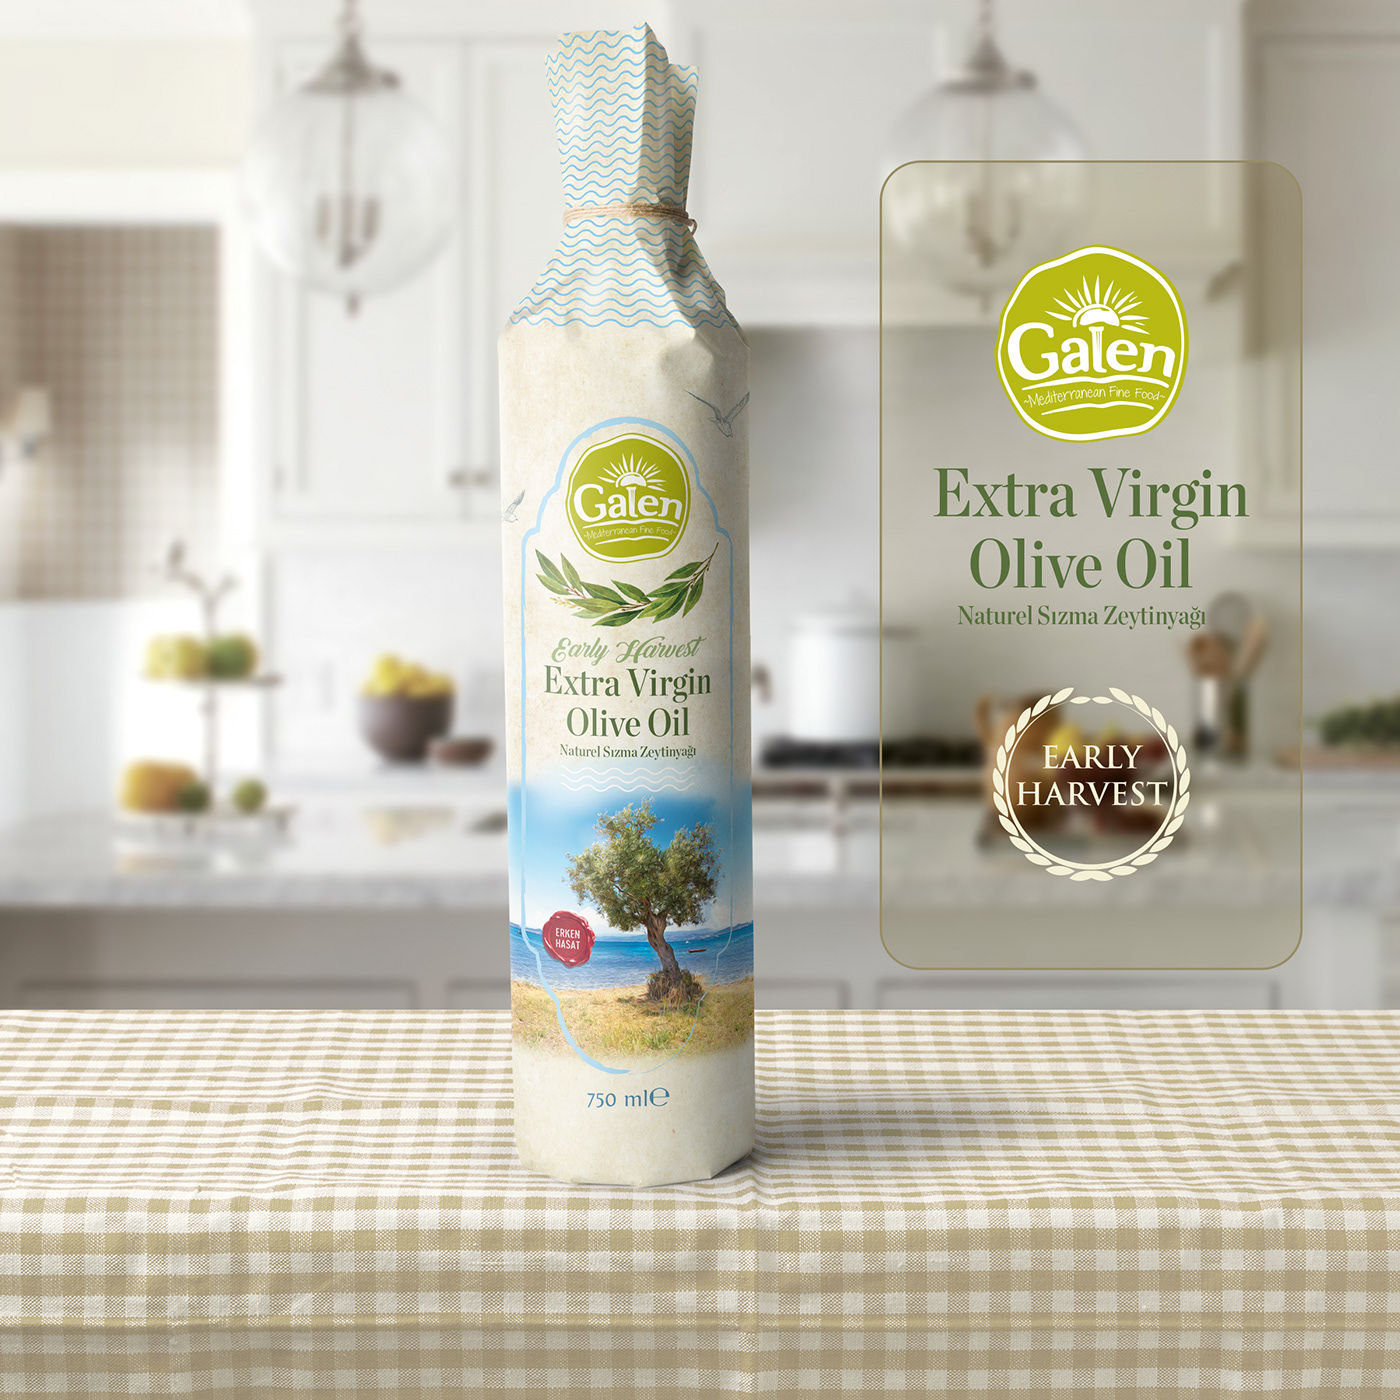 ambalaj tasarımı ambalaj tasarımı izmir creas creative Etiket Tasarımı Olive Oil package package design  tasarım ajansı tasarım ajansı izmir zeytinyağı